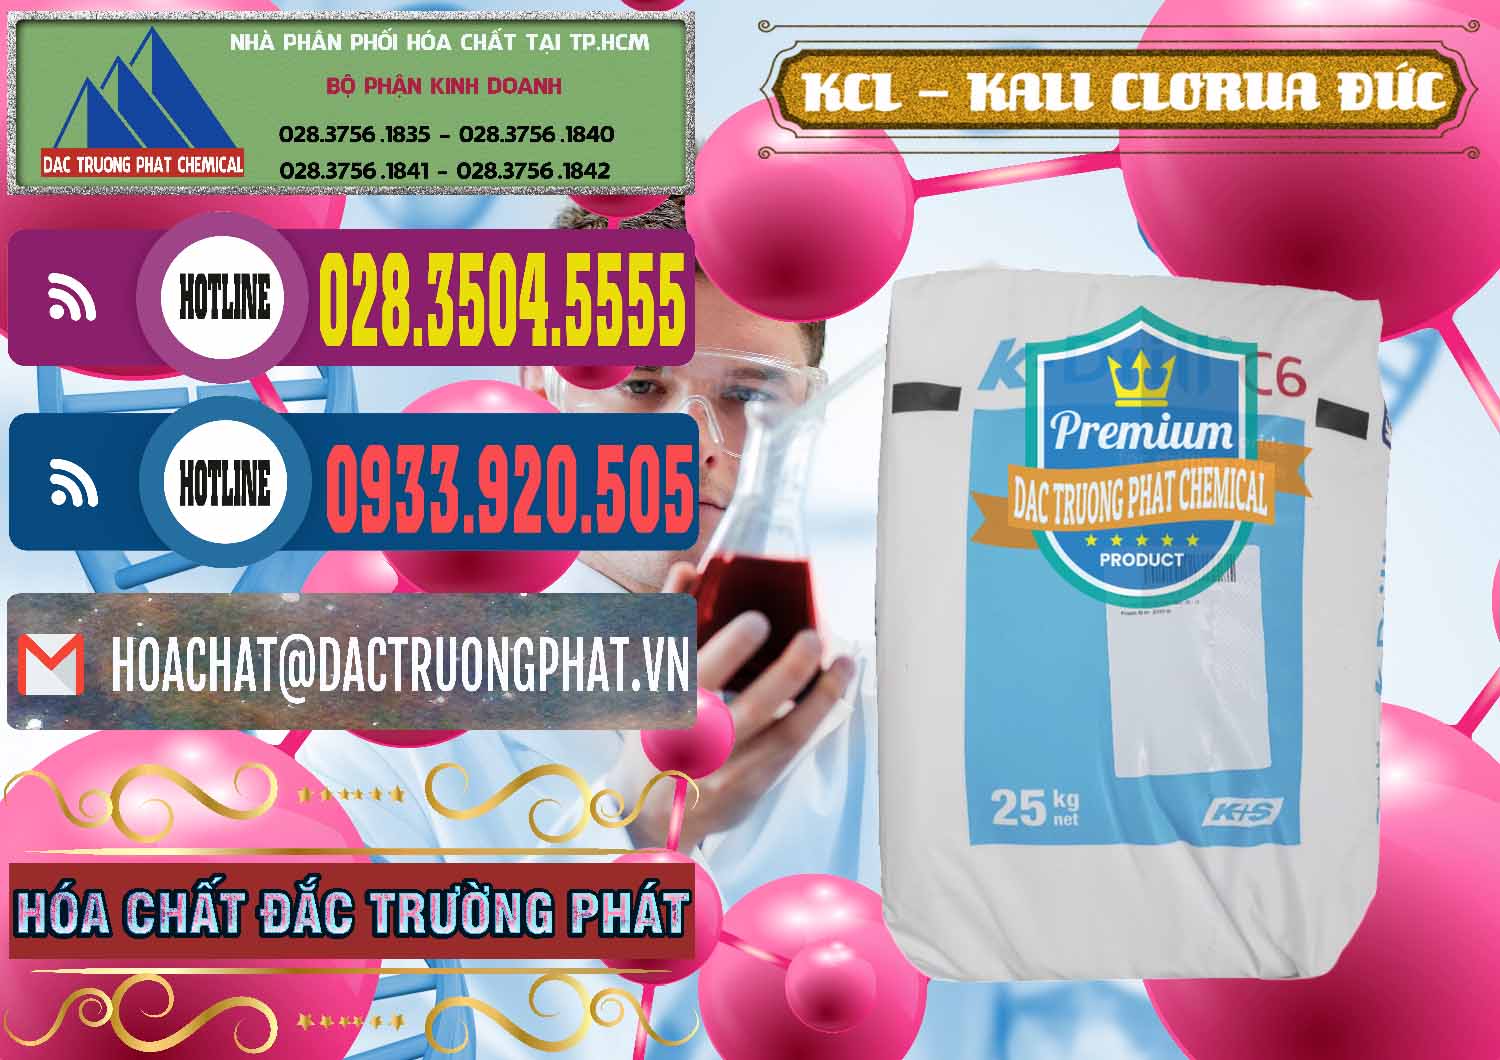 Nơi bán - phân phối KCL – Kali Clorua Trắng K DRILL Đức Germany - 0428 - Phân phối ( cung cấp ) hóa chất tại TP.HCM - muabanhoachat.com.vn